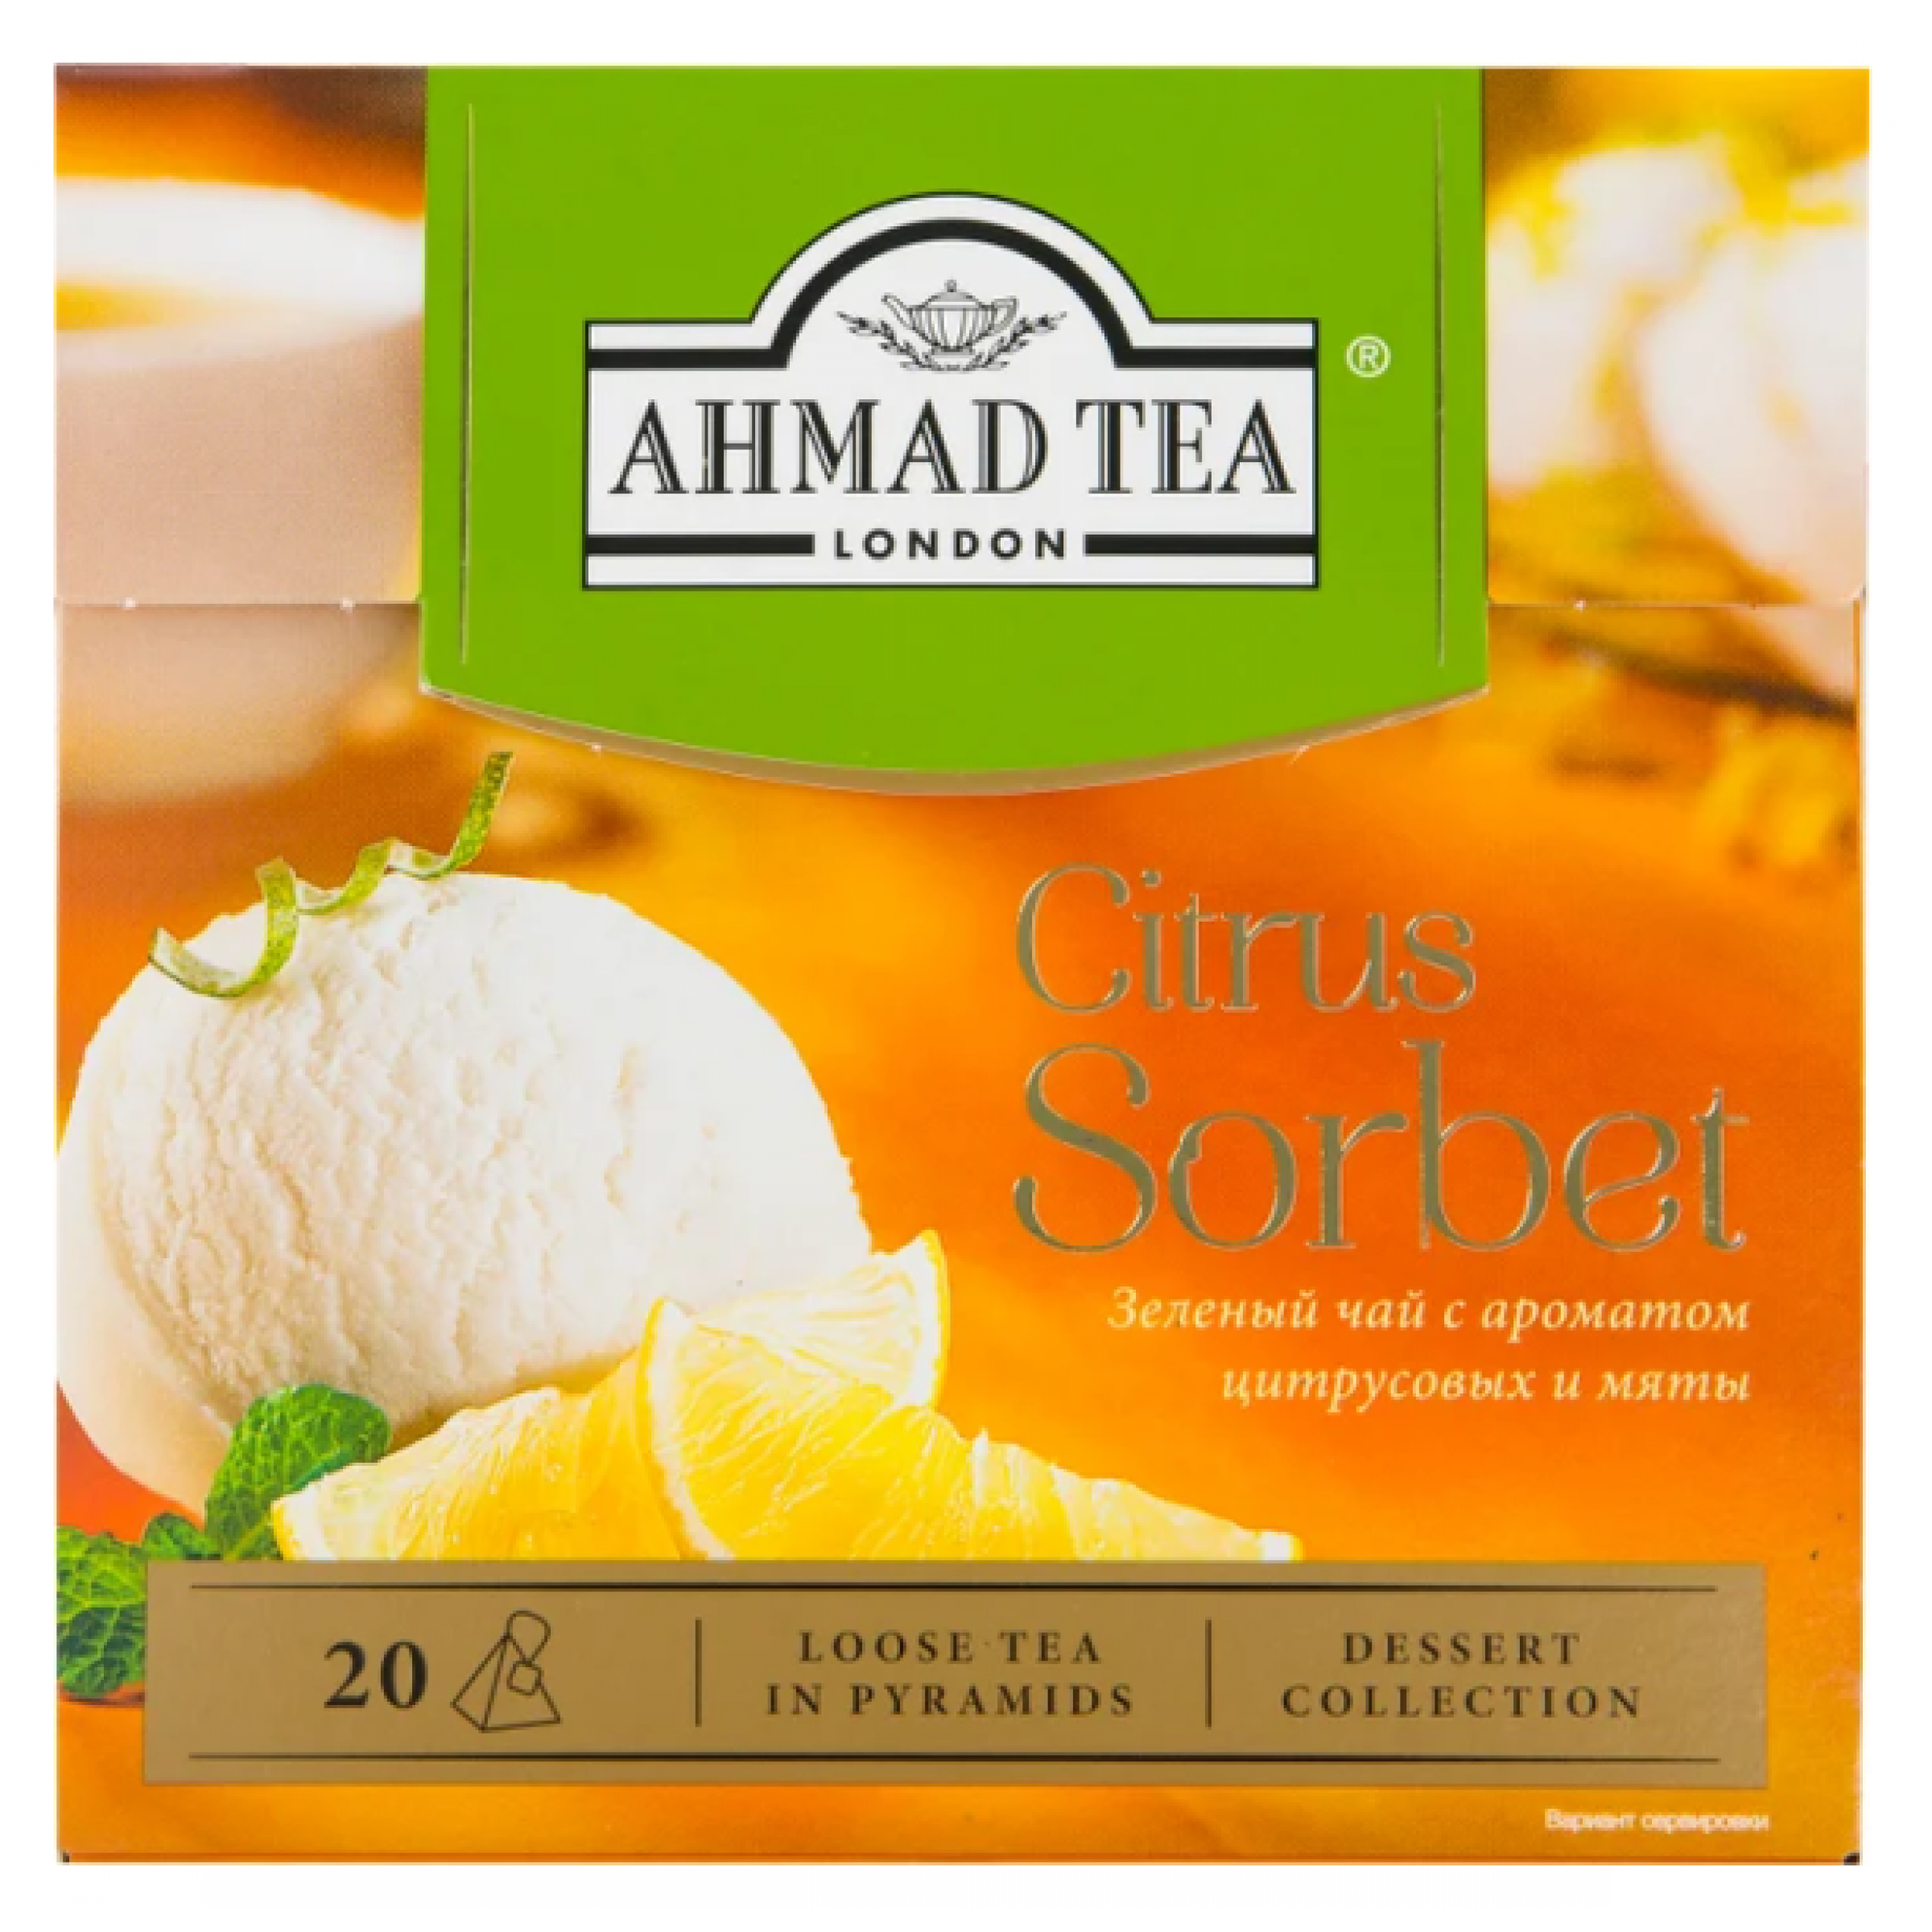 Чай Ahmad Tea Citrus Sorbet зеленый лист. чай в пирамидках, 20 шт*1,8 гр